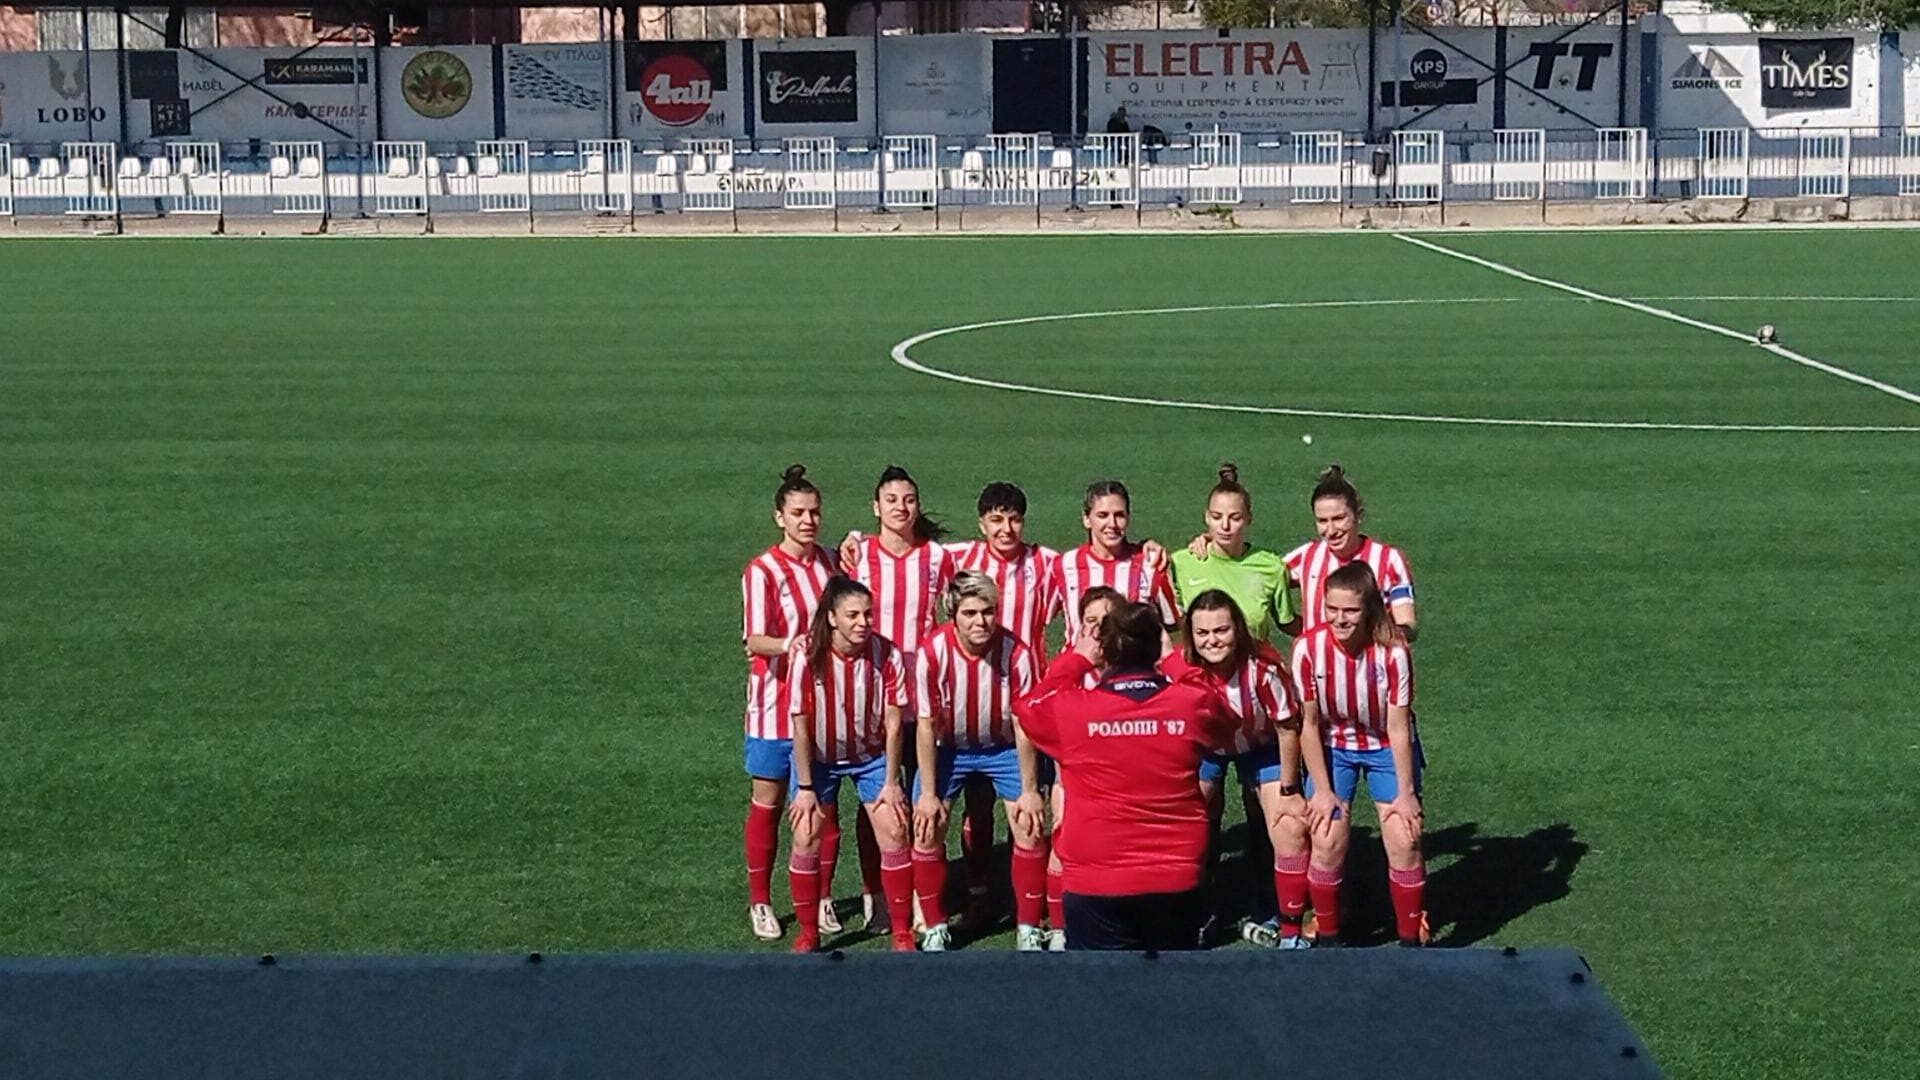 Β’ Εθνική – γυναικείο ποδόσφαιρο… Ματσάρα στην Θεσσαλονίκη 3-3 με τους Λέοντες η Ροδόπη 87